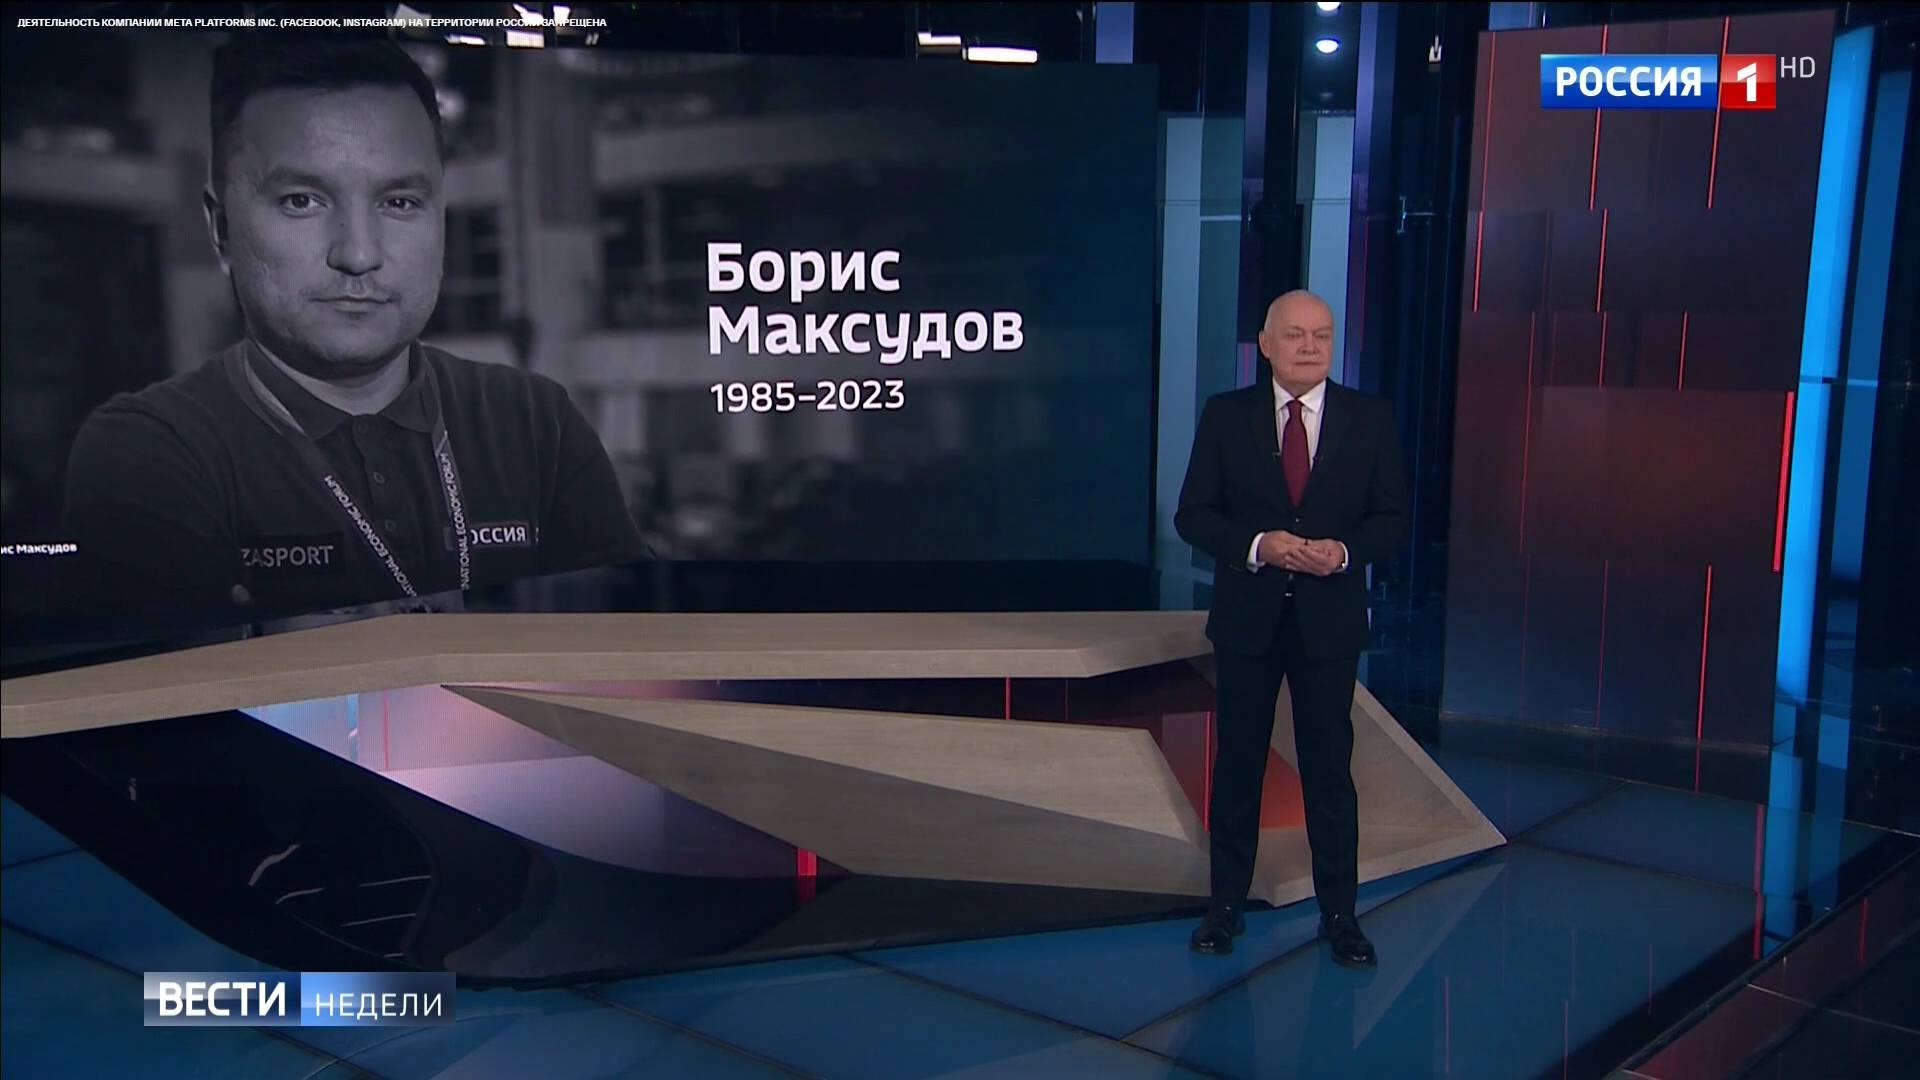 Starszy prezenter w studio. Na ekranie zdjęcie młodszego męzczyzny z rosyjskim podpisem "Borys Maksudow 1985-2023"